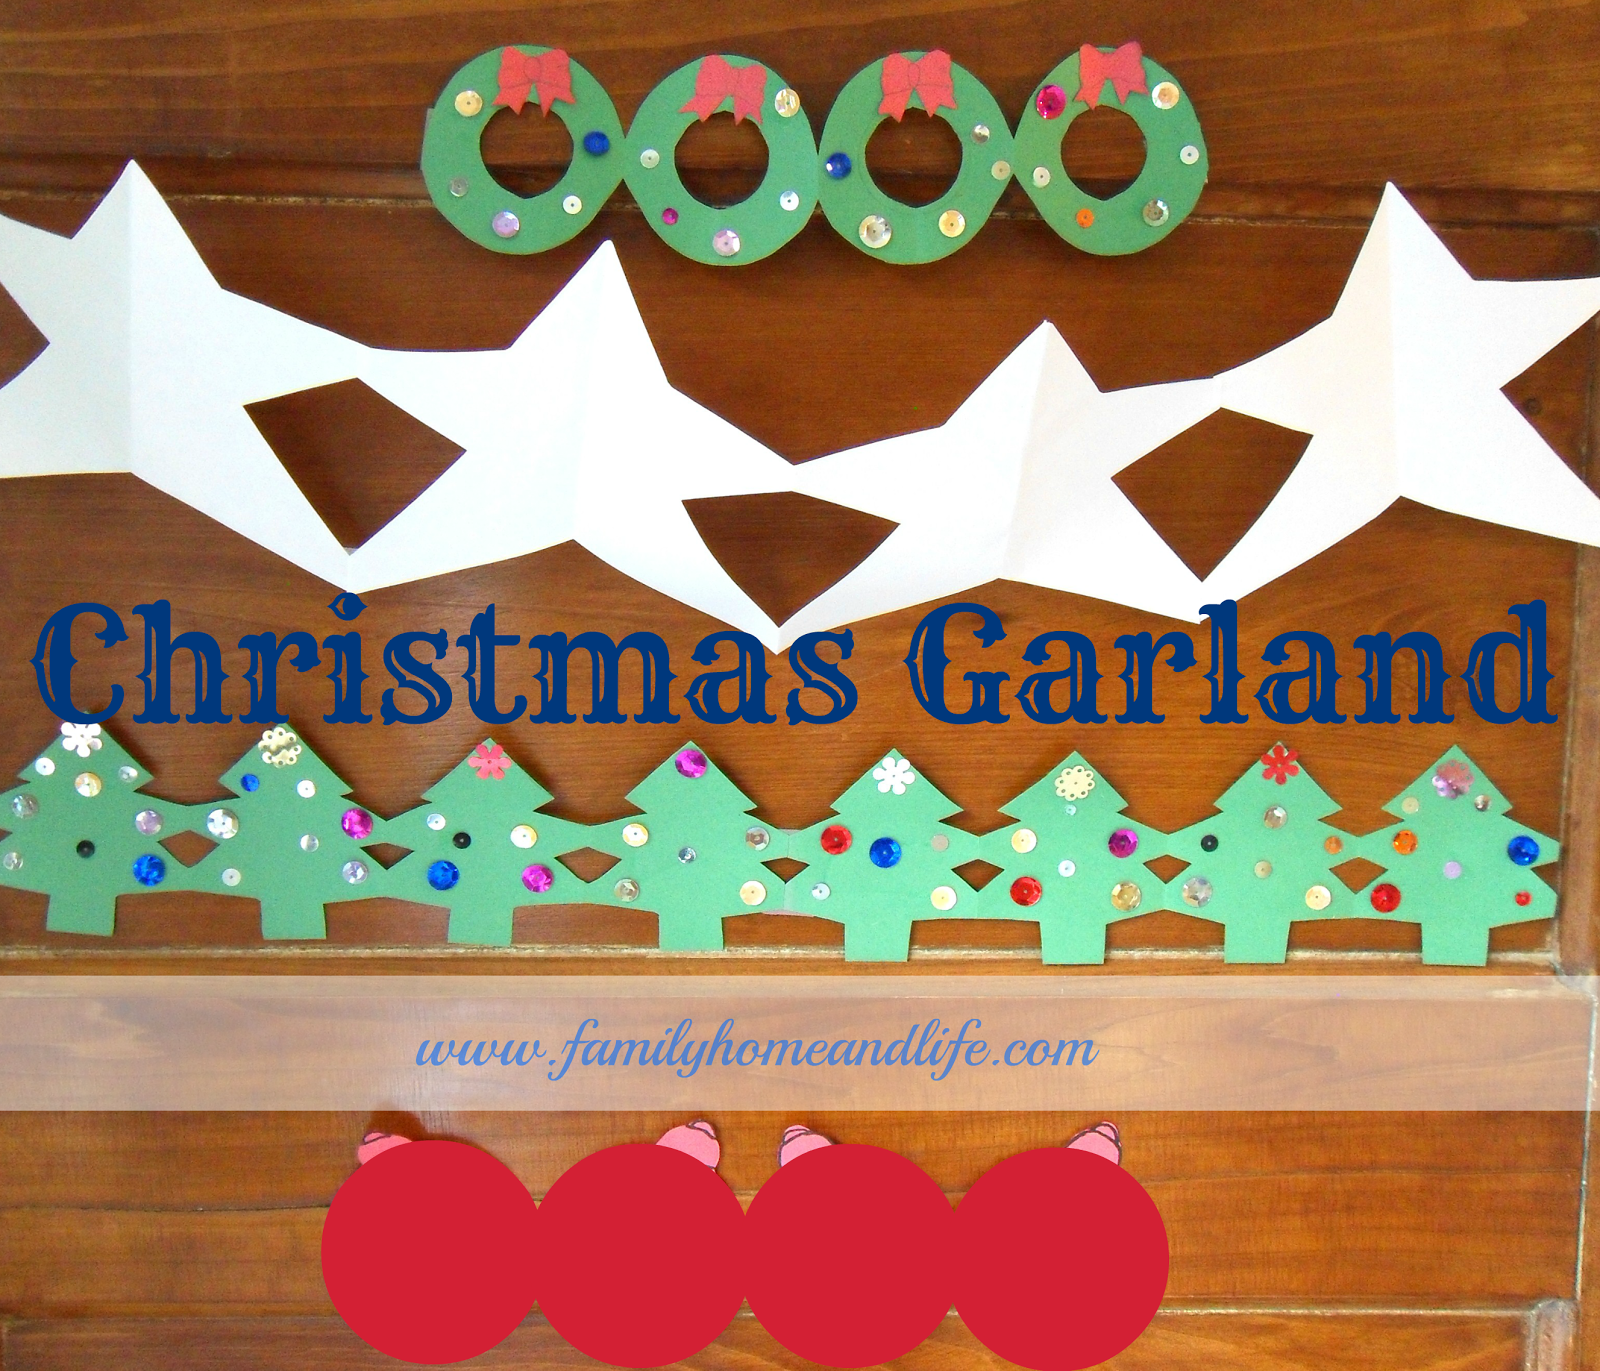 http://4.bp.blogspot.com/-d2sle4ptv6s/UMtG69d5jCI/AAAAAAAAHdo/yfgzjxKugWo/s1600/Christmas+Garland+.1.png